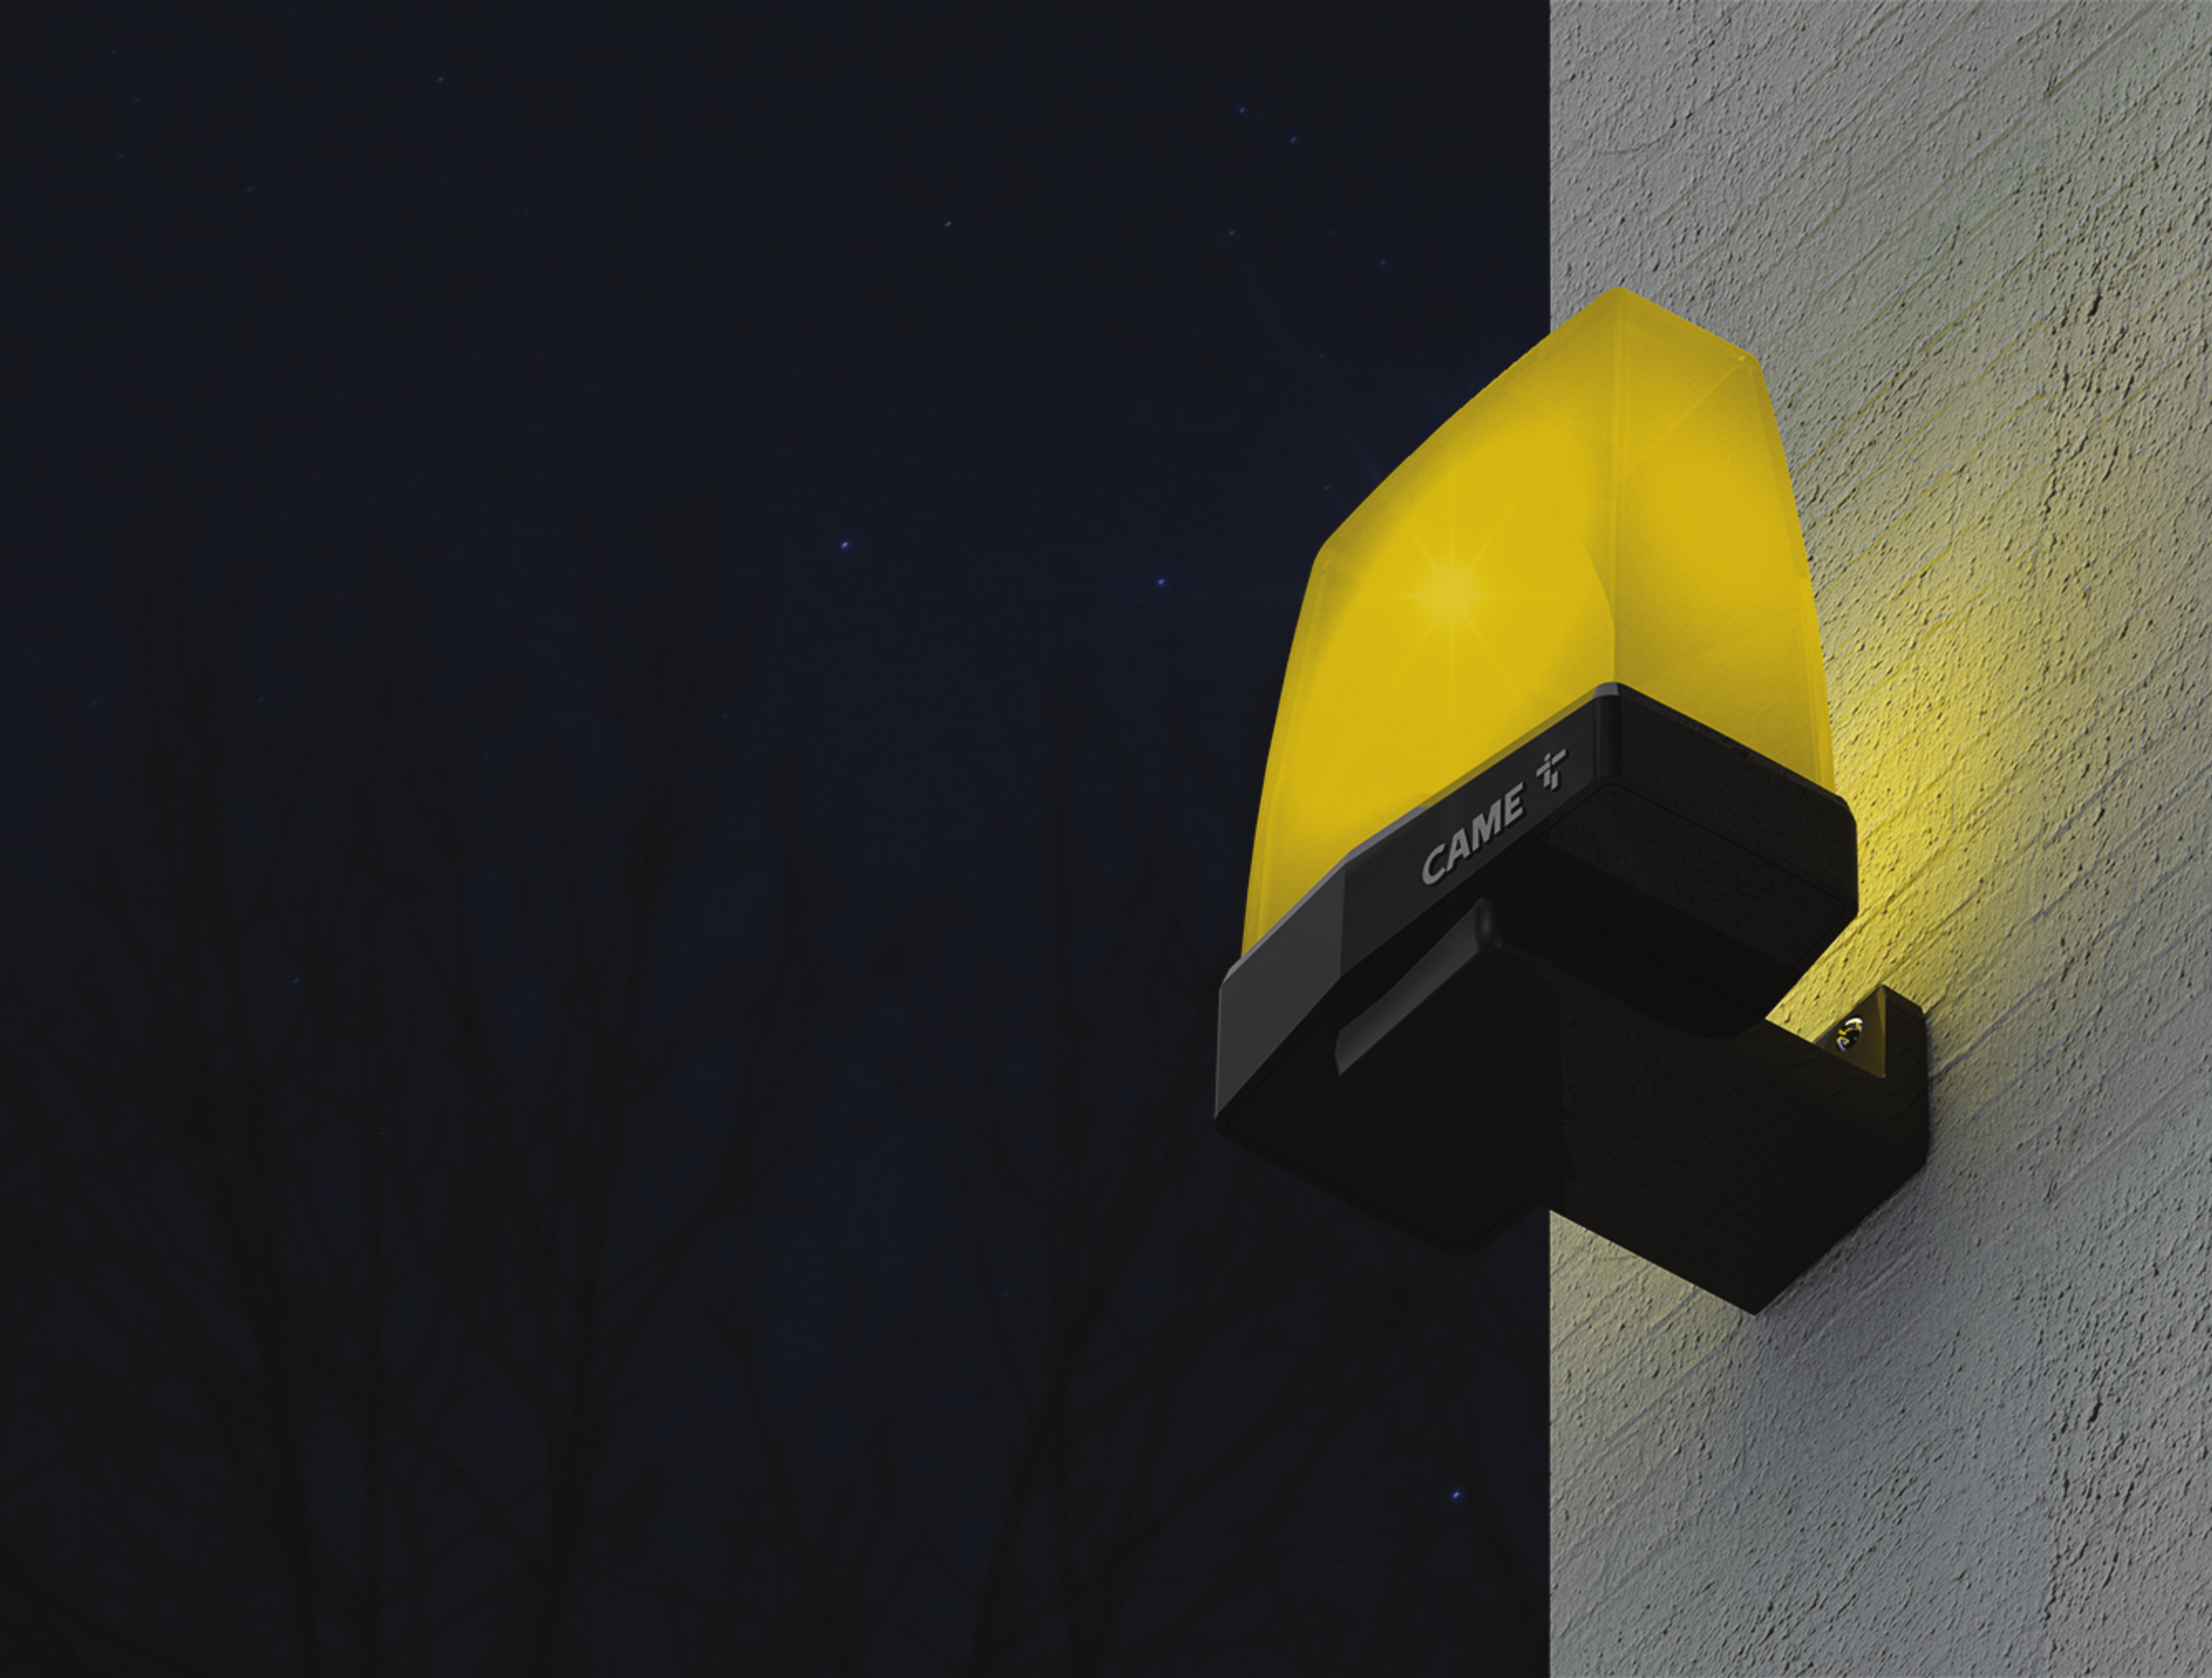 Сигнальные лампы CAME для безопасности автоматических систем